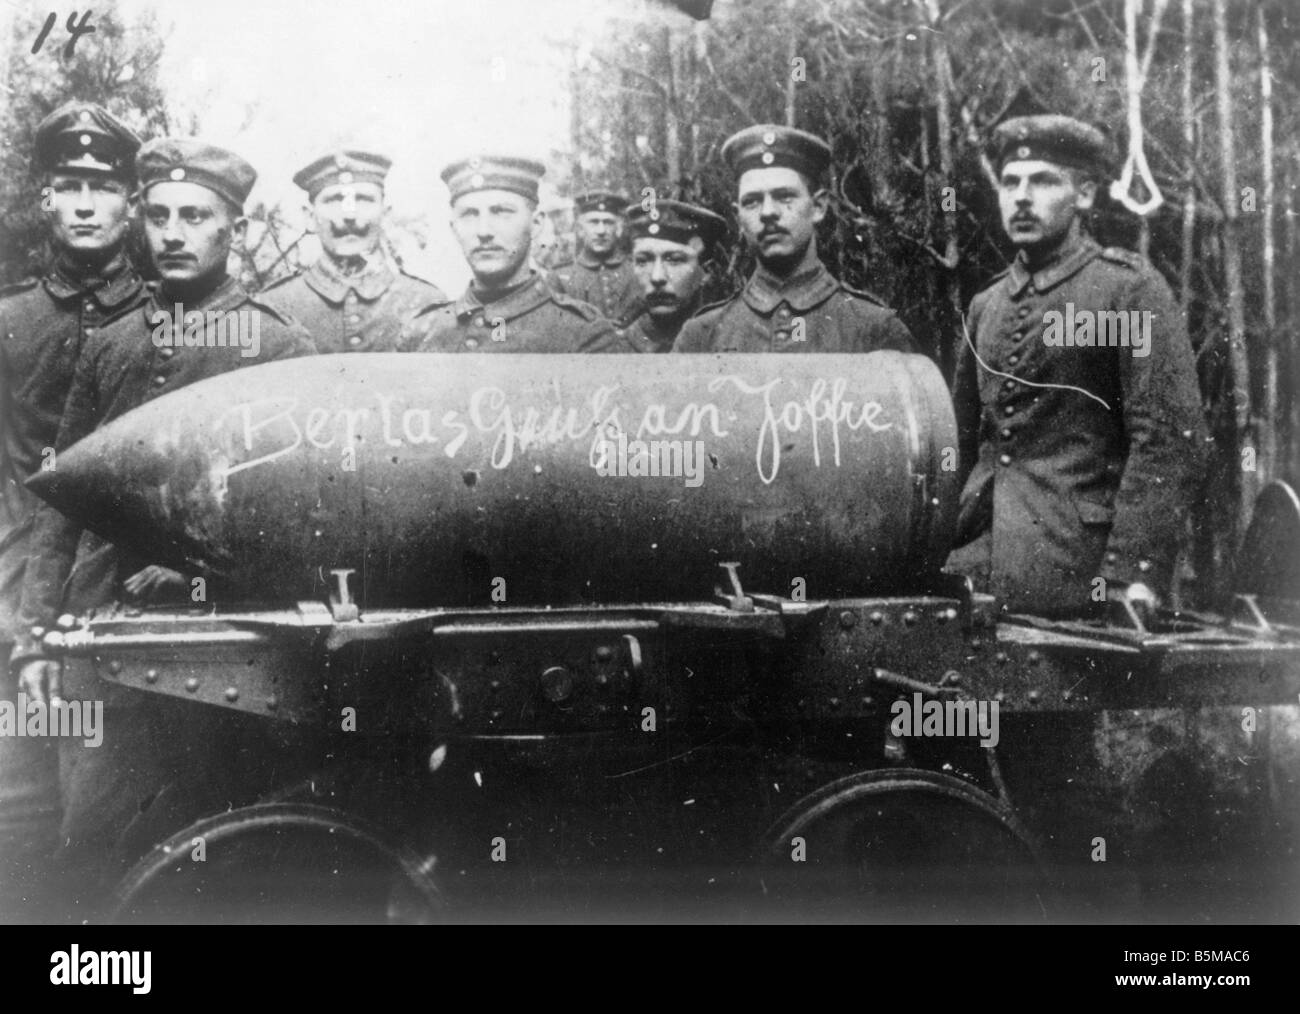 2 G55 W1 1916 30 WWI Ger Artillerie Truppen mit shell 1916 Geschichte Weltkrieg, Westfront deutsche Artillerie Truppen, mit einer Shell Stockfoto